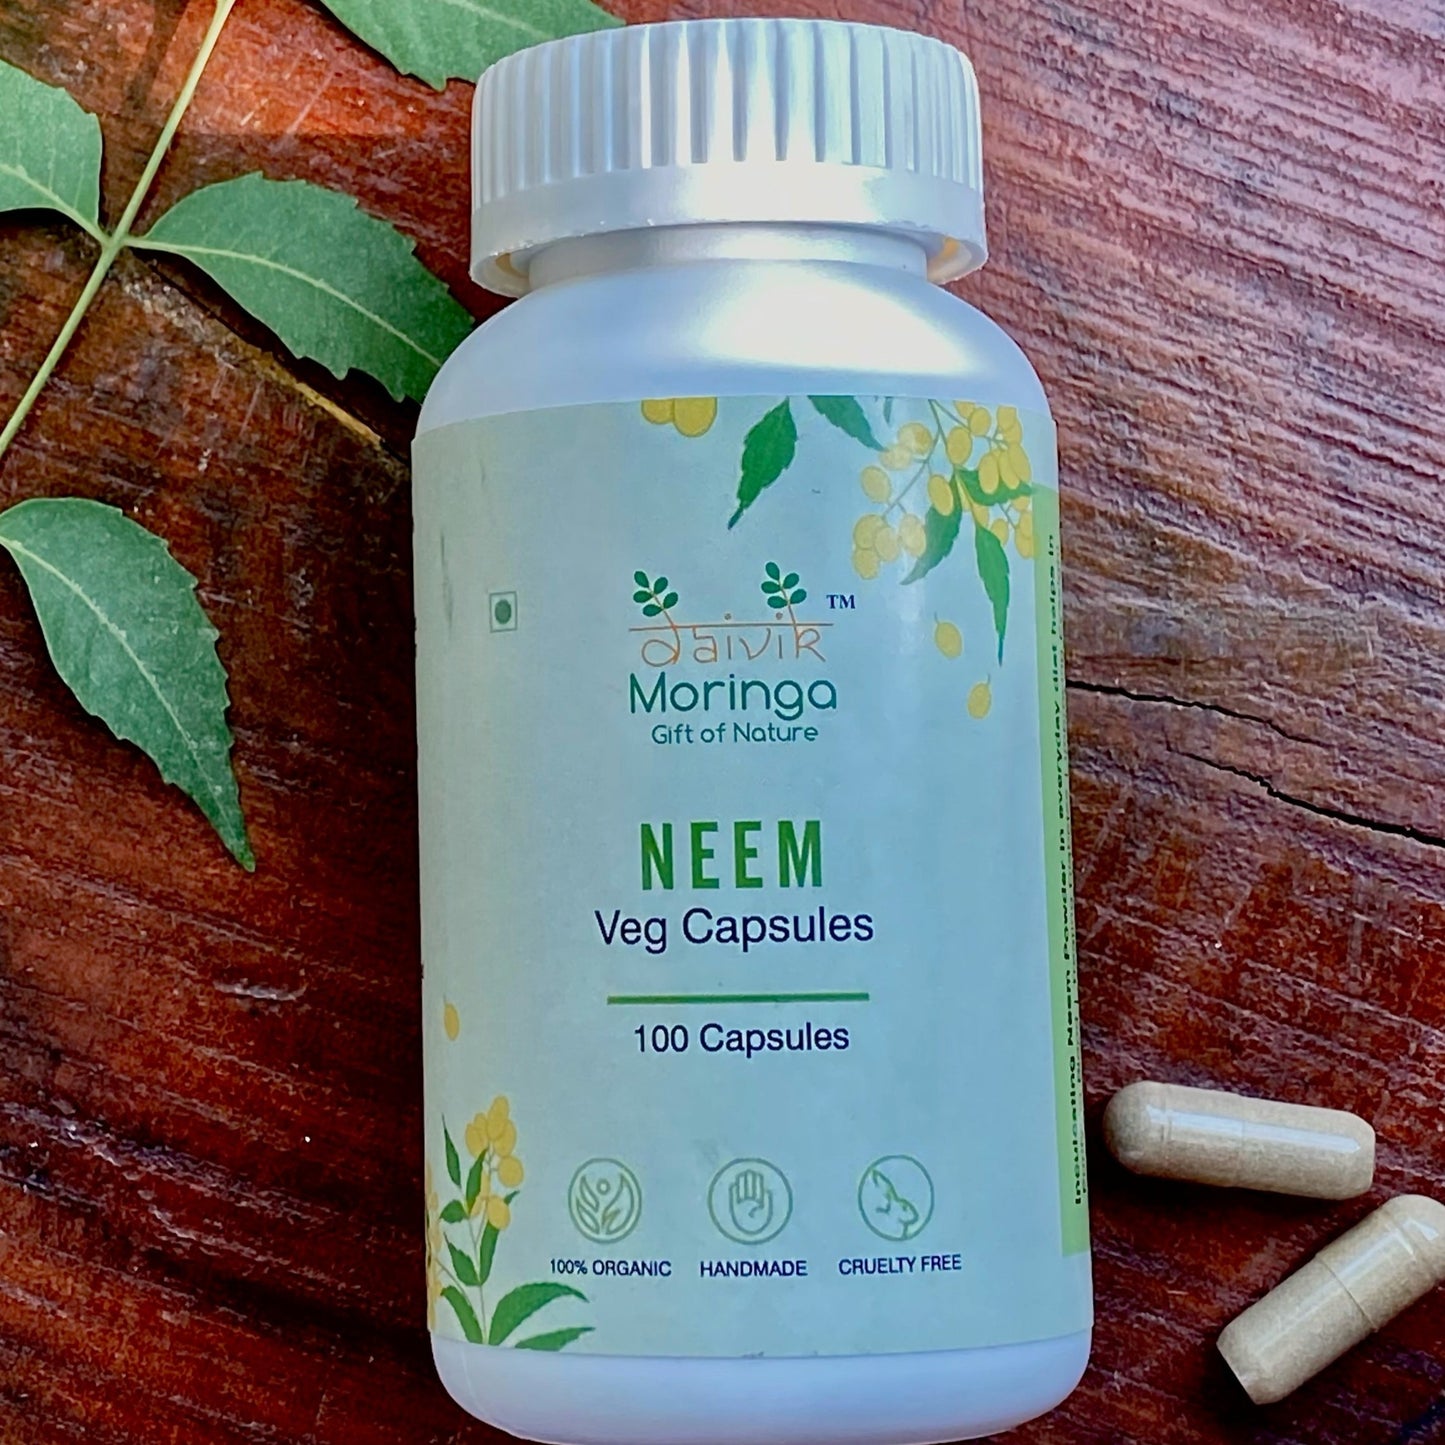 Daivik Moringa Neem Veg Capsules | 100% Natural | Detox, Skin Care, Anti Inflammatory | 100 Caps Each